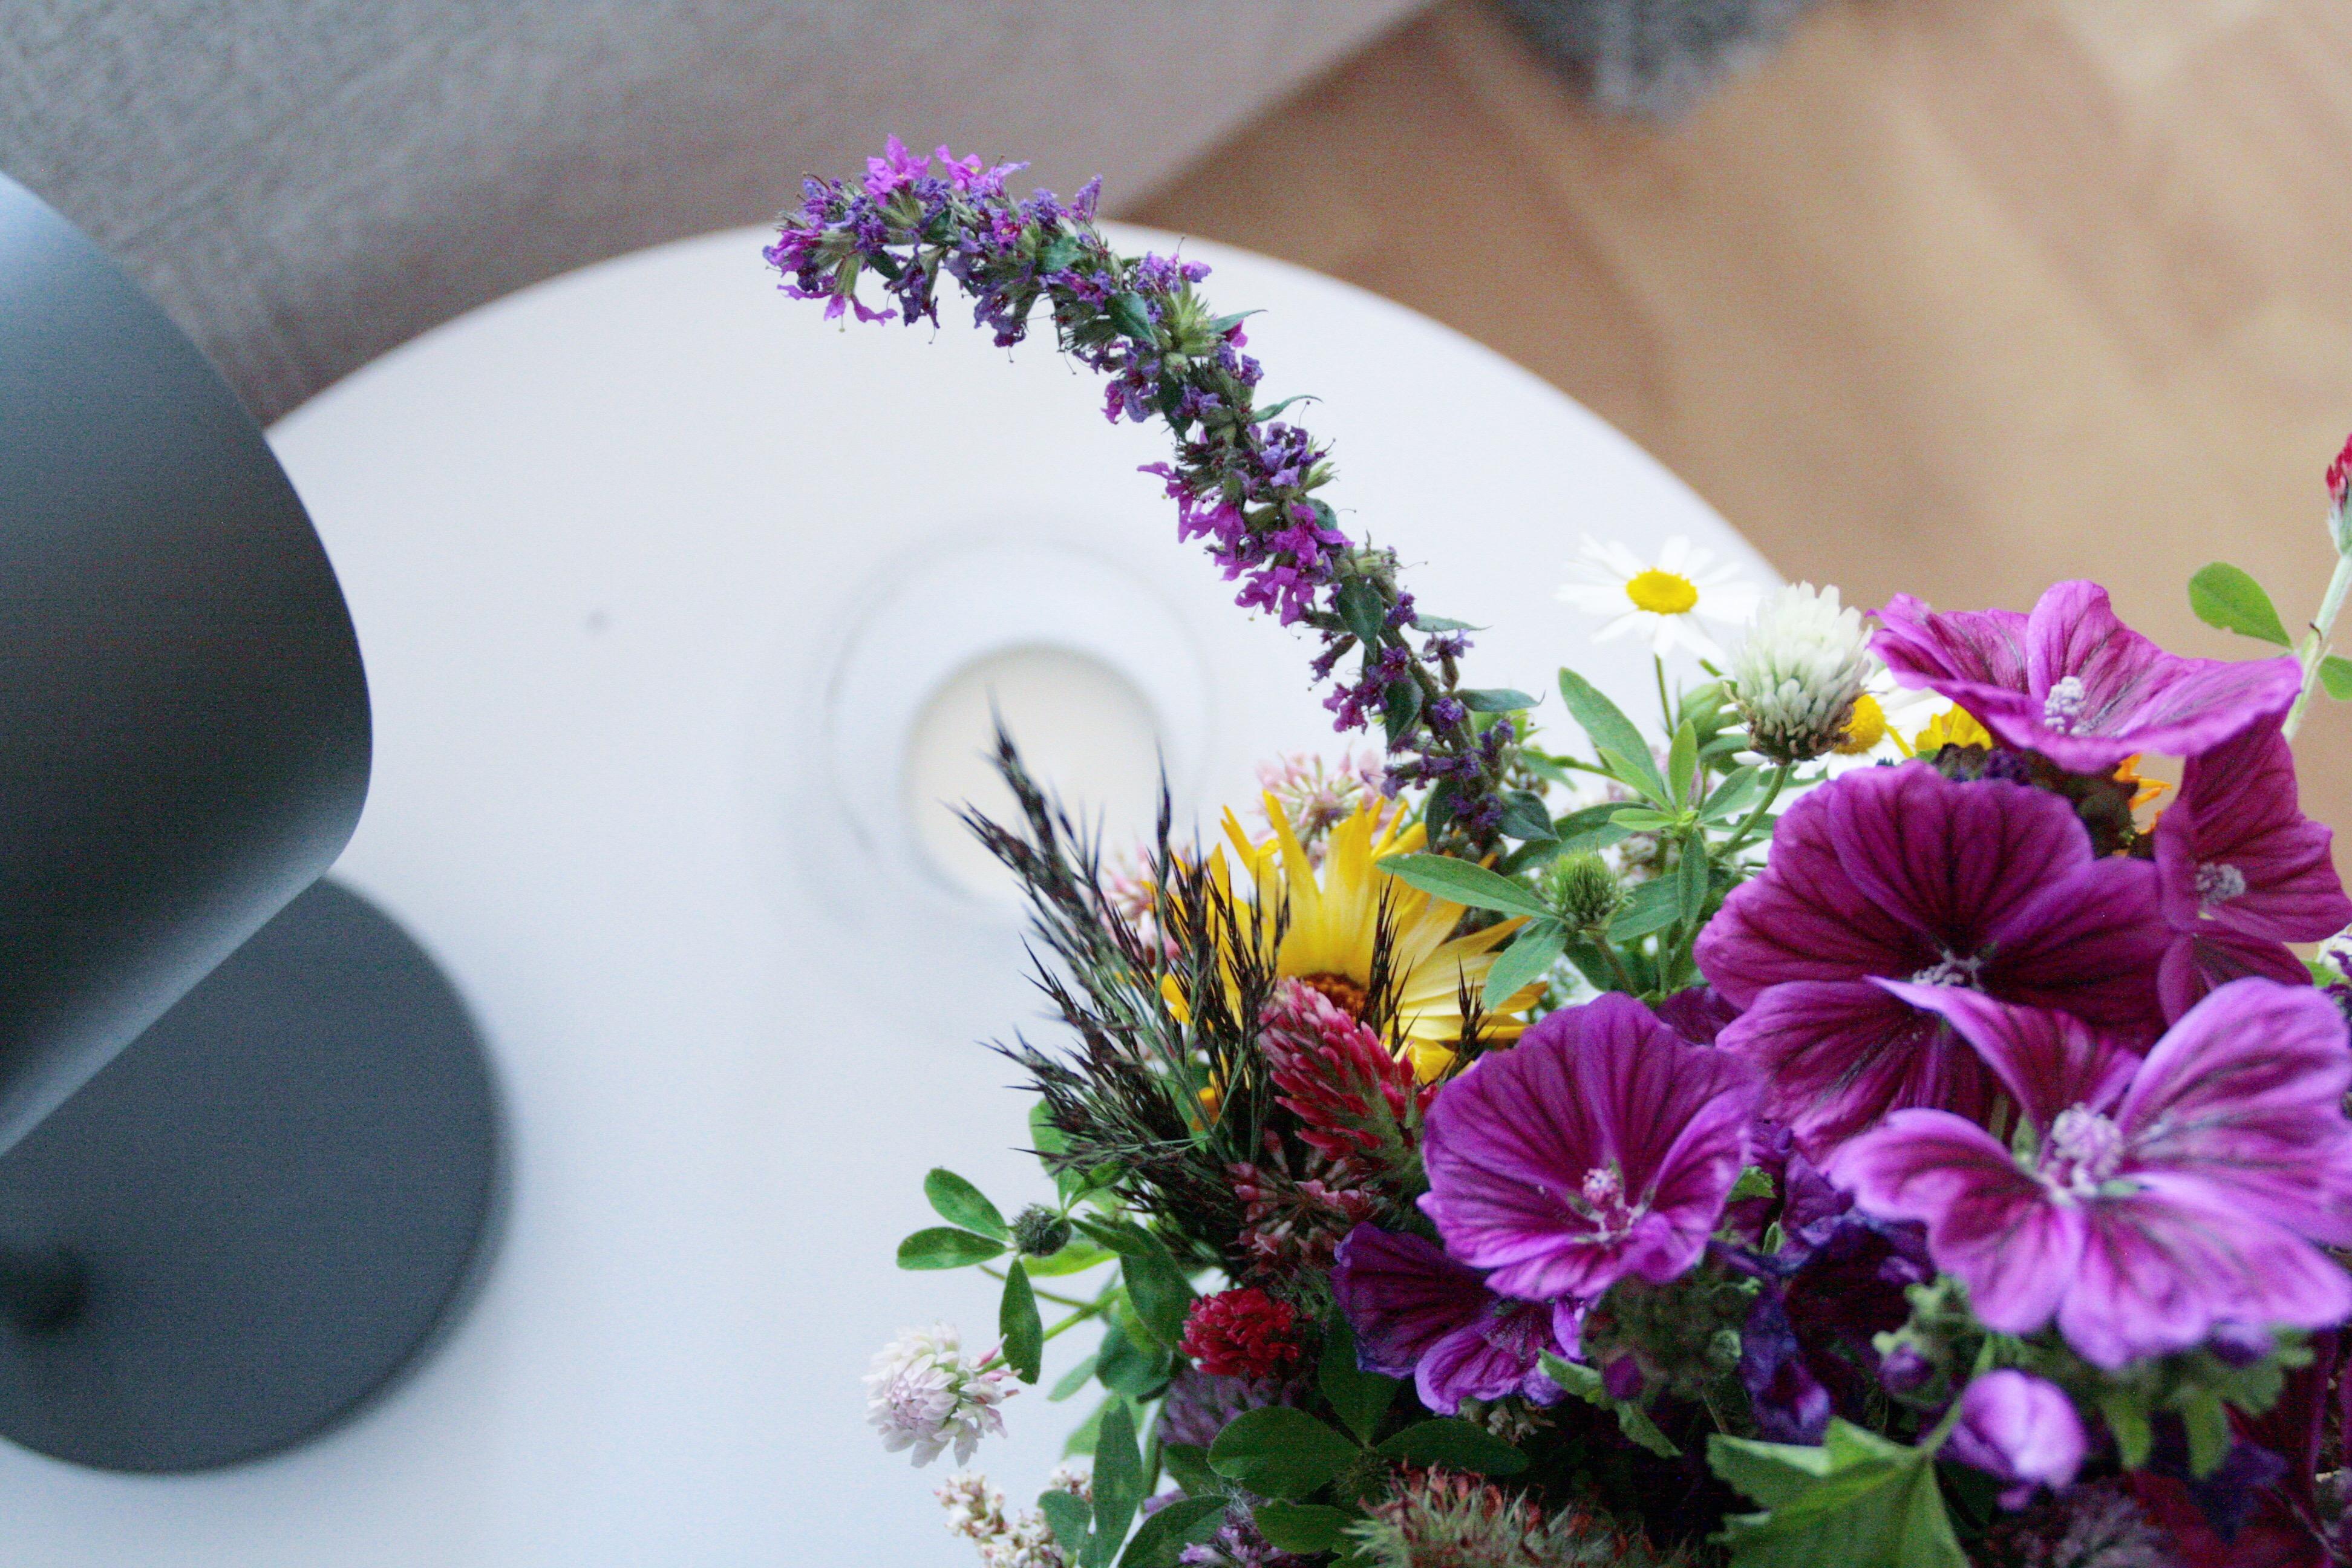 Wildblumen-Liebe! Was die Natur alles Schönes zu bieten hat ist doch unglaublich oder? #flowerpower #deko #blumen #natur